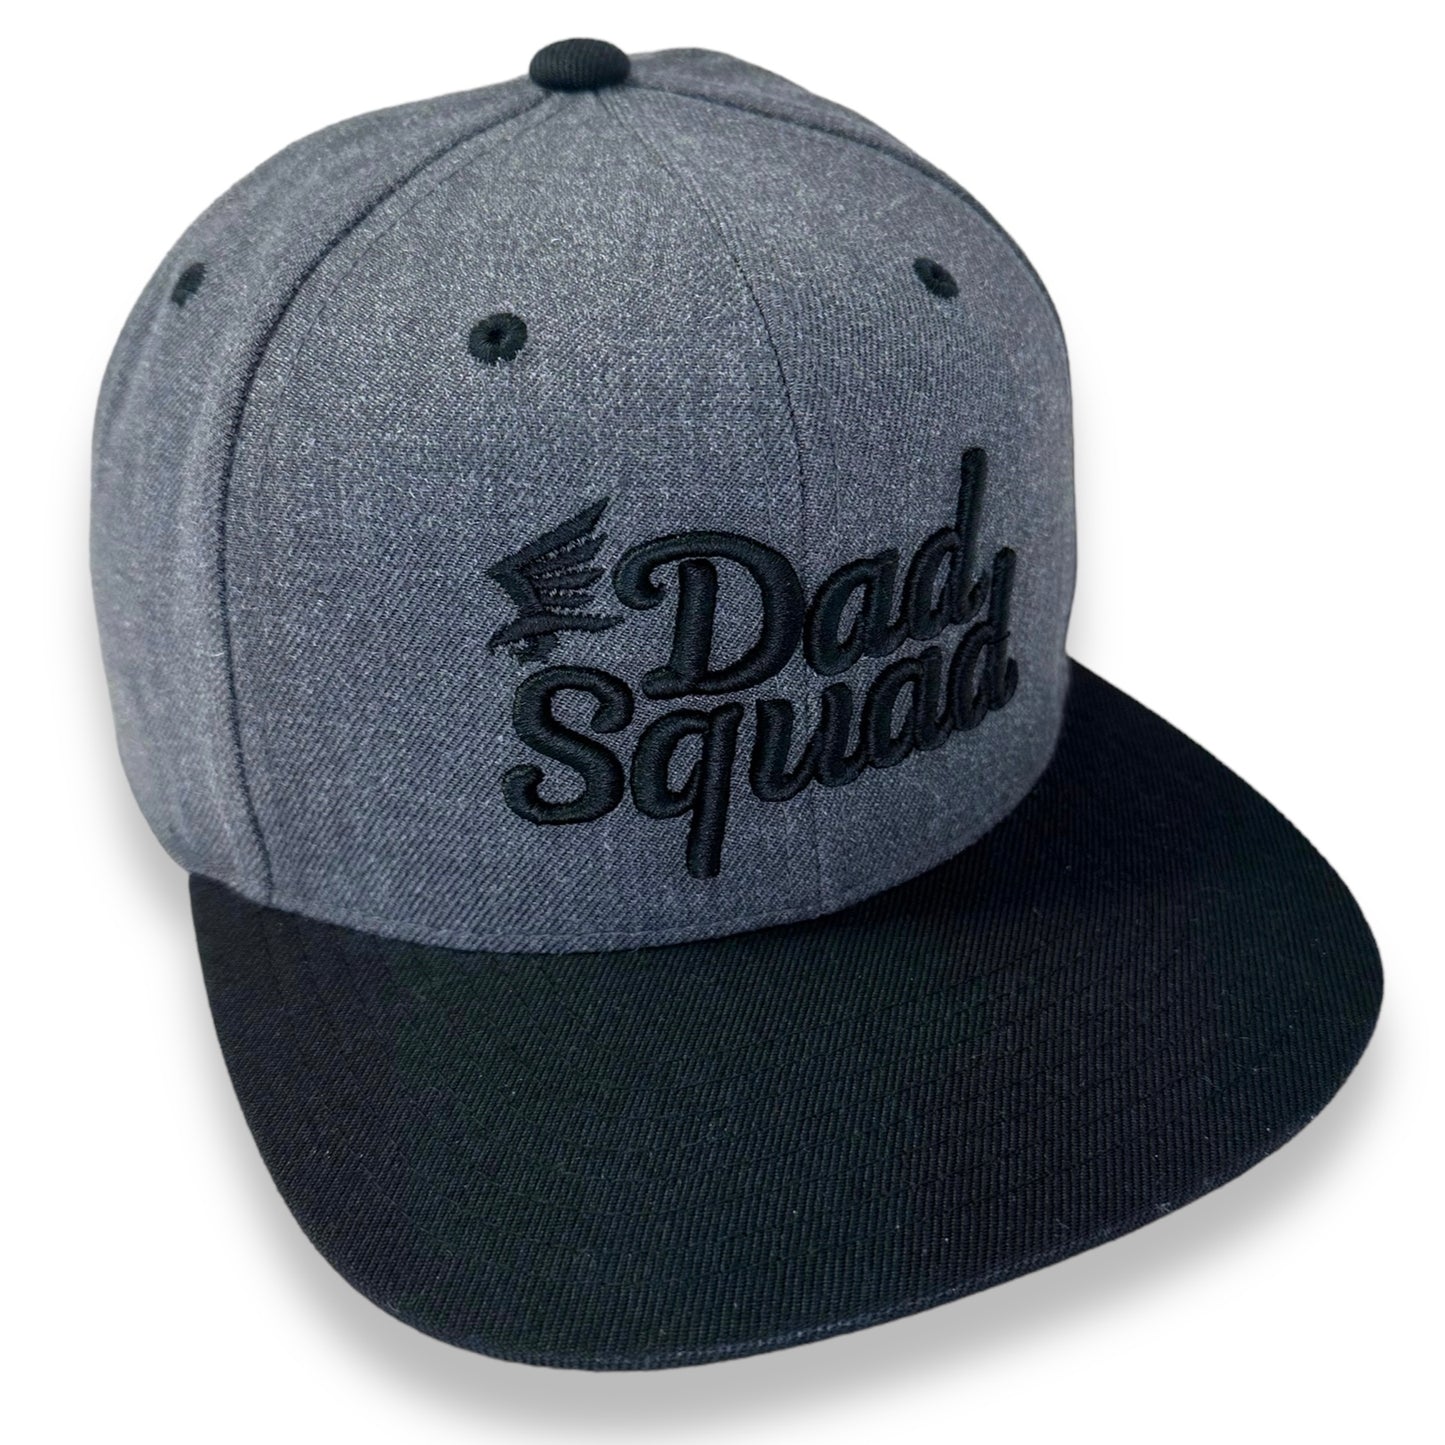 Dad Squad Flat Bill Cap - Charcoal/Black